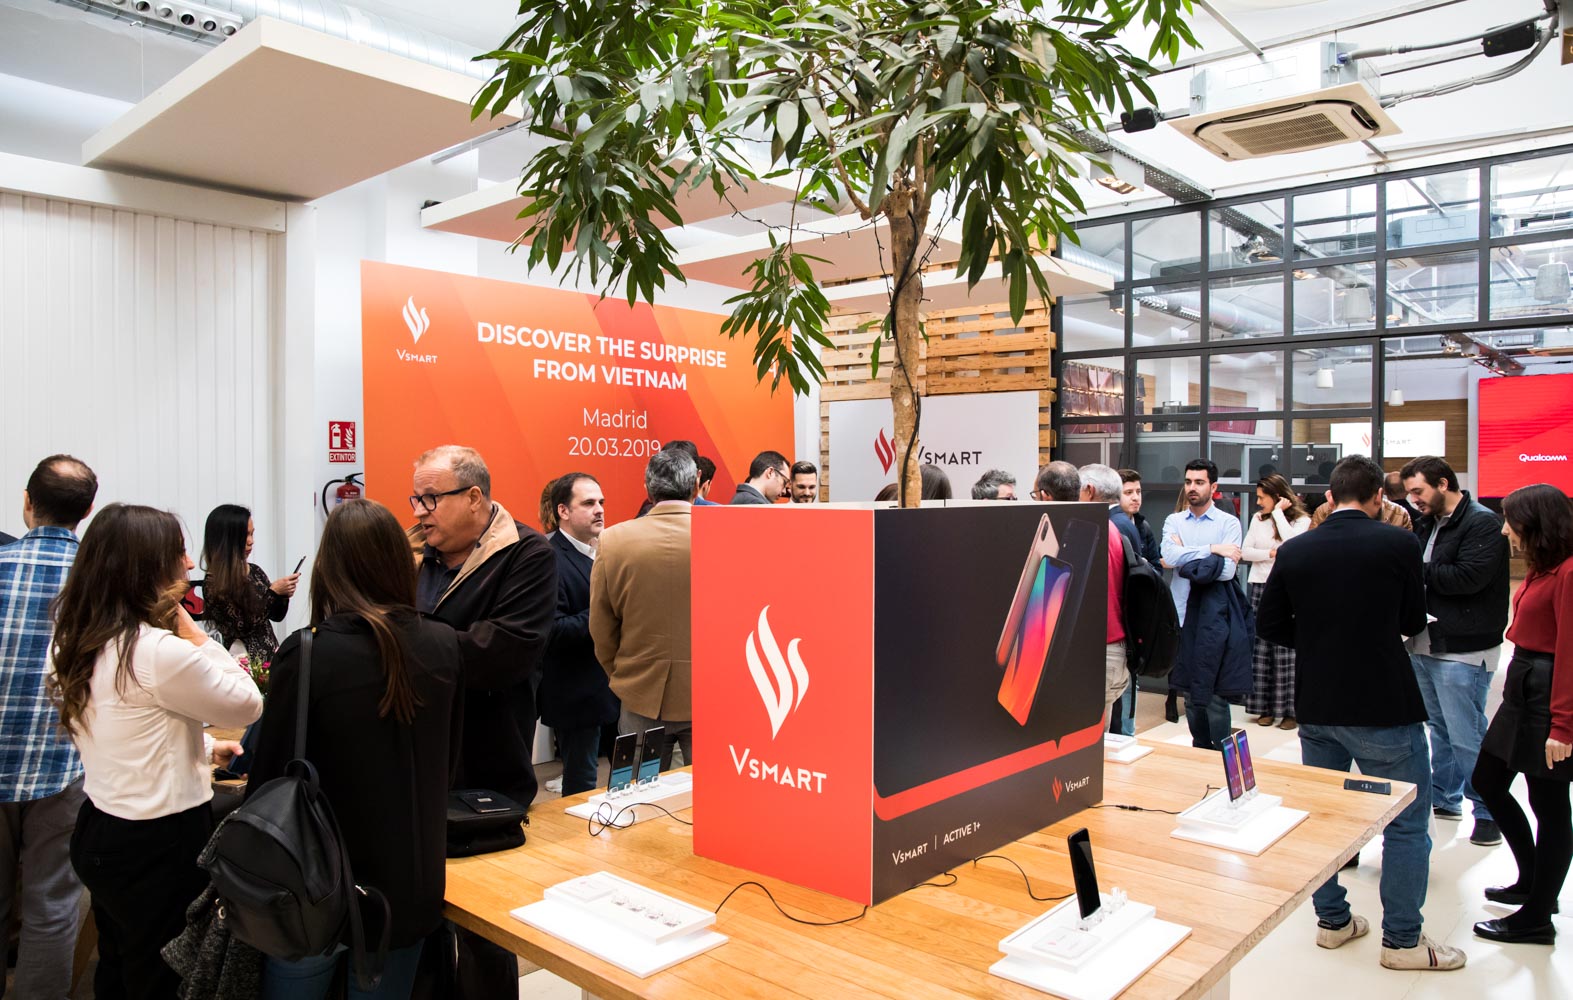 Các nhà báo Tây Ban Nha trao đổi trước khi họp báo Ra mắt sản phẩm và thương hiệu Vsmart tại Madrid